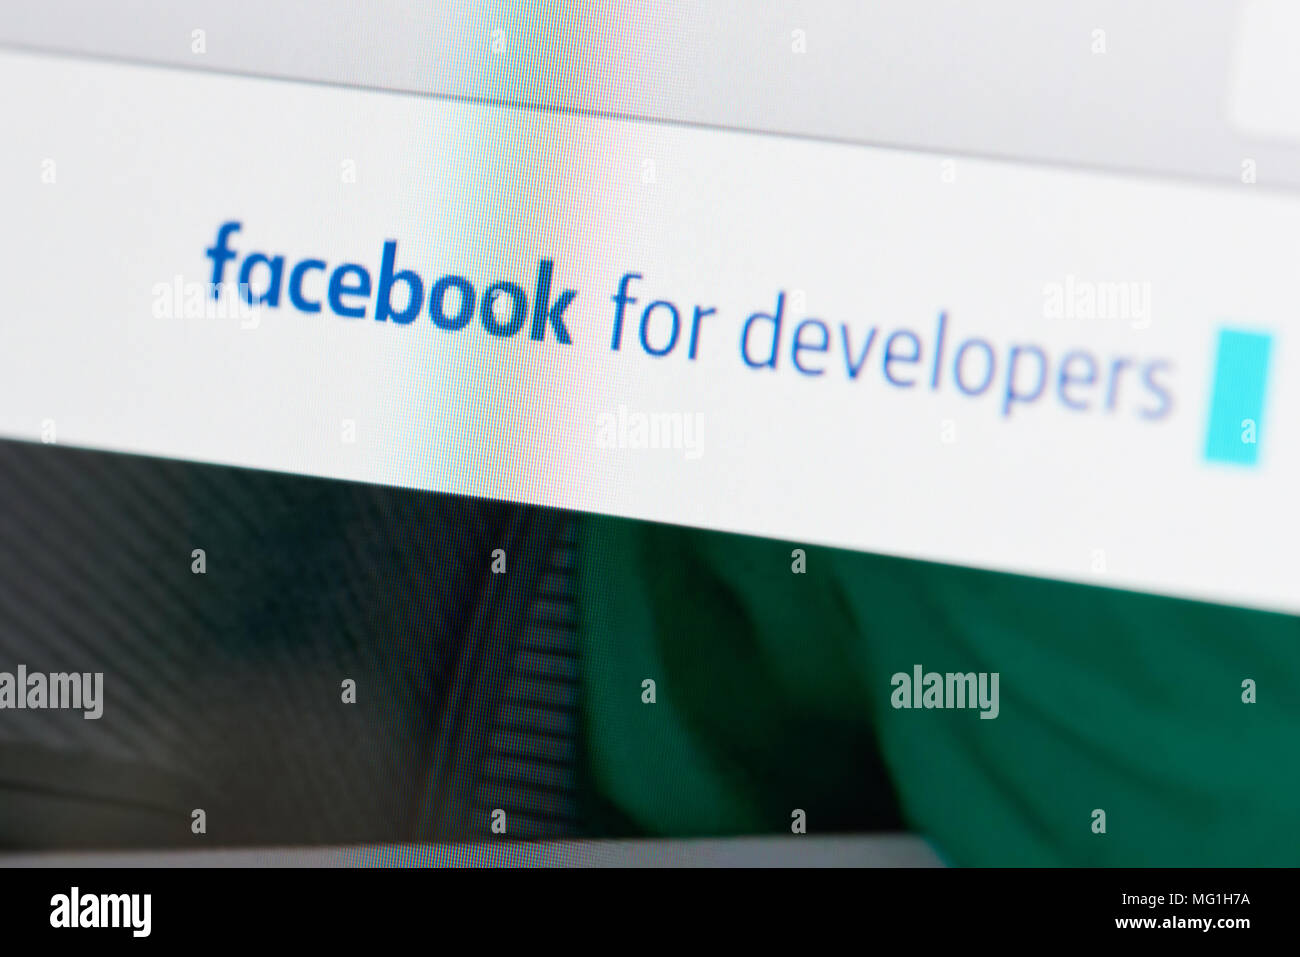 New York, USA - 21. März 2018: Facebook für Entwickler Seite auf dem Bildschirm des Laptops close-up Stockfoto